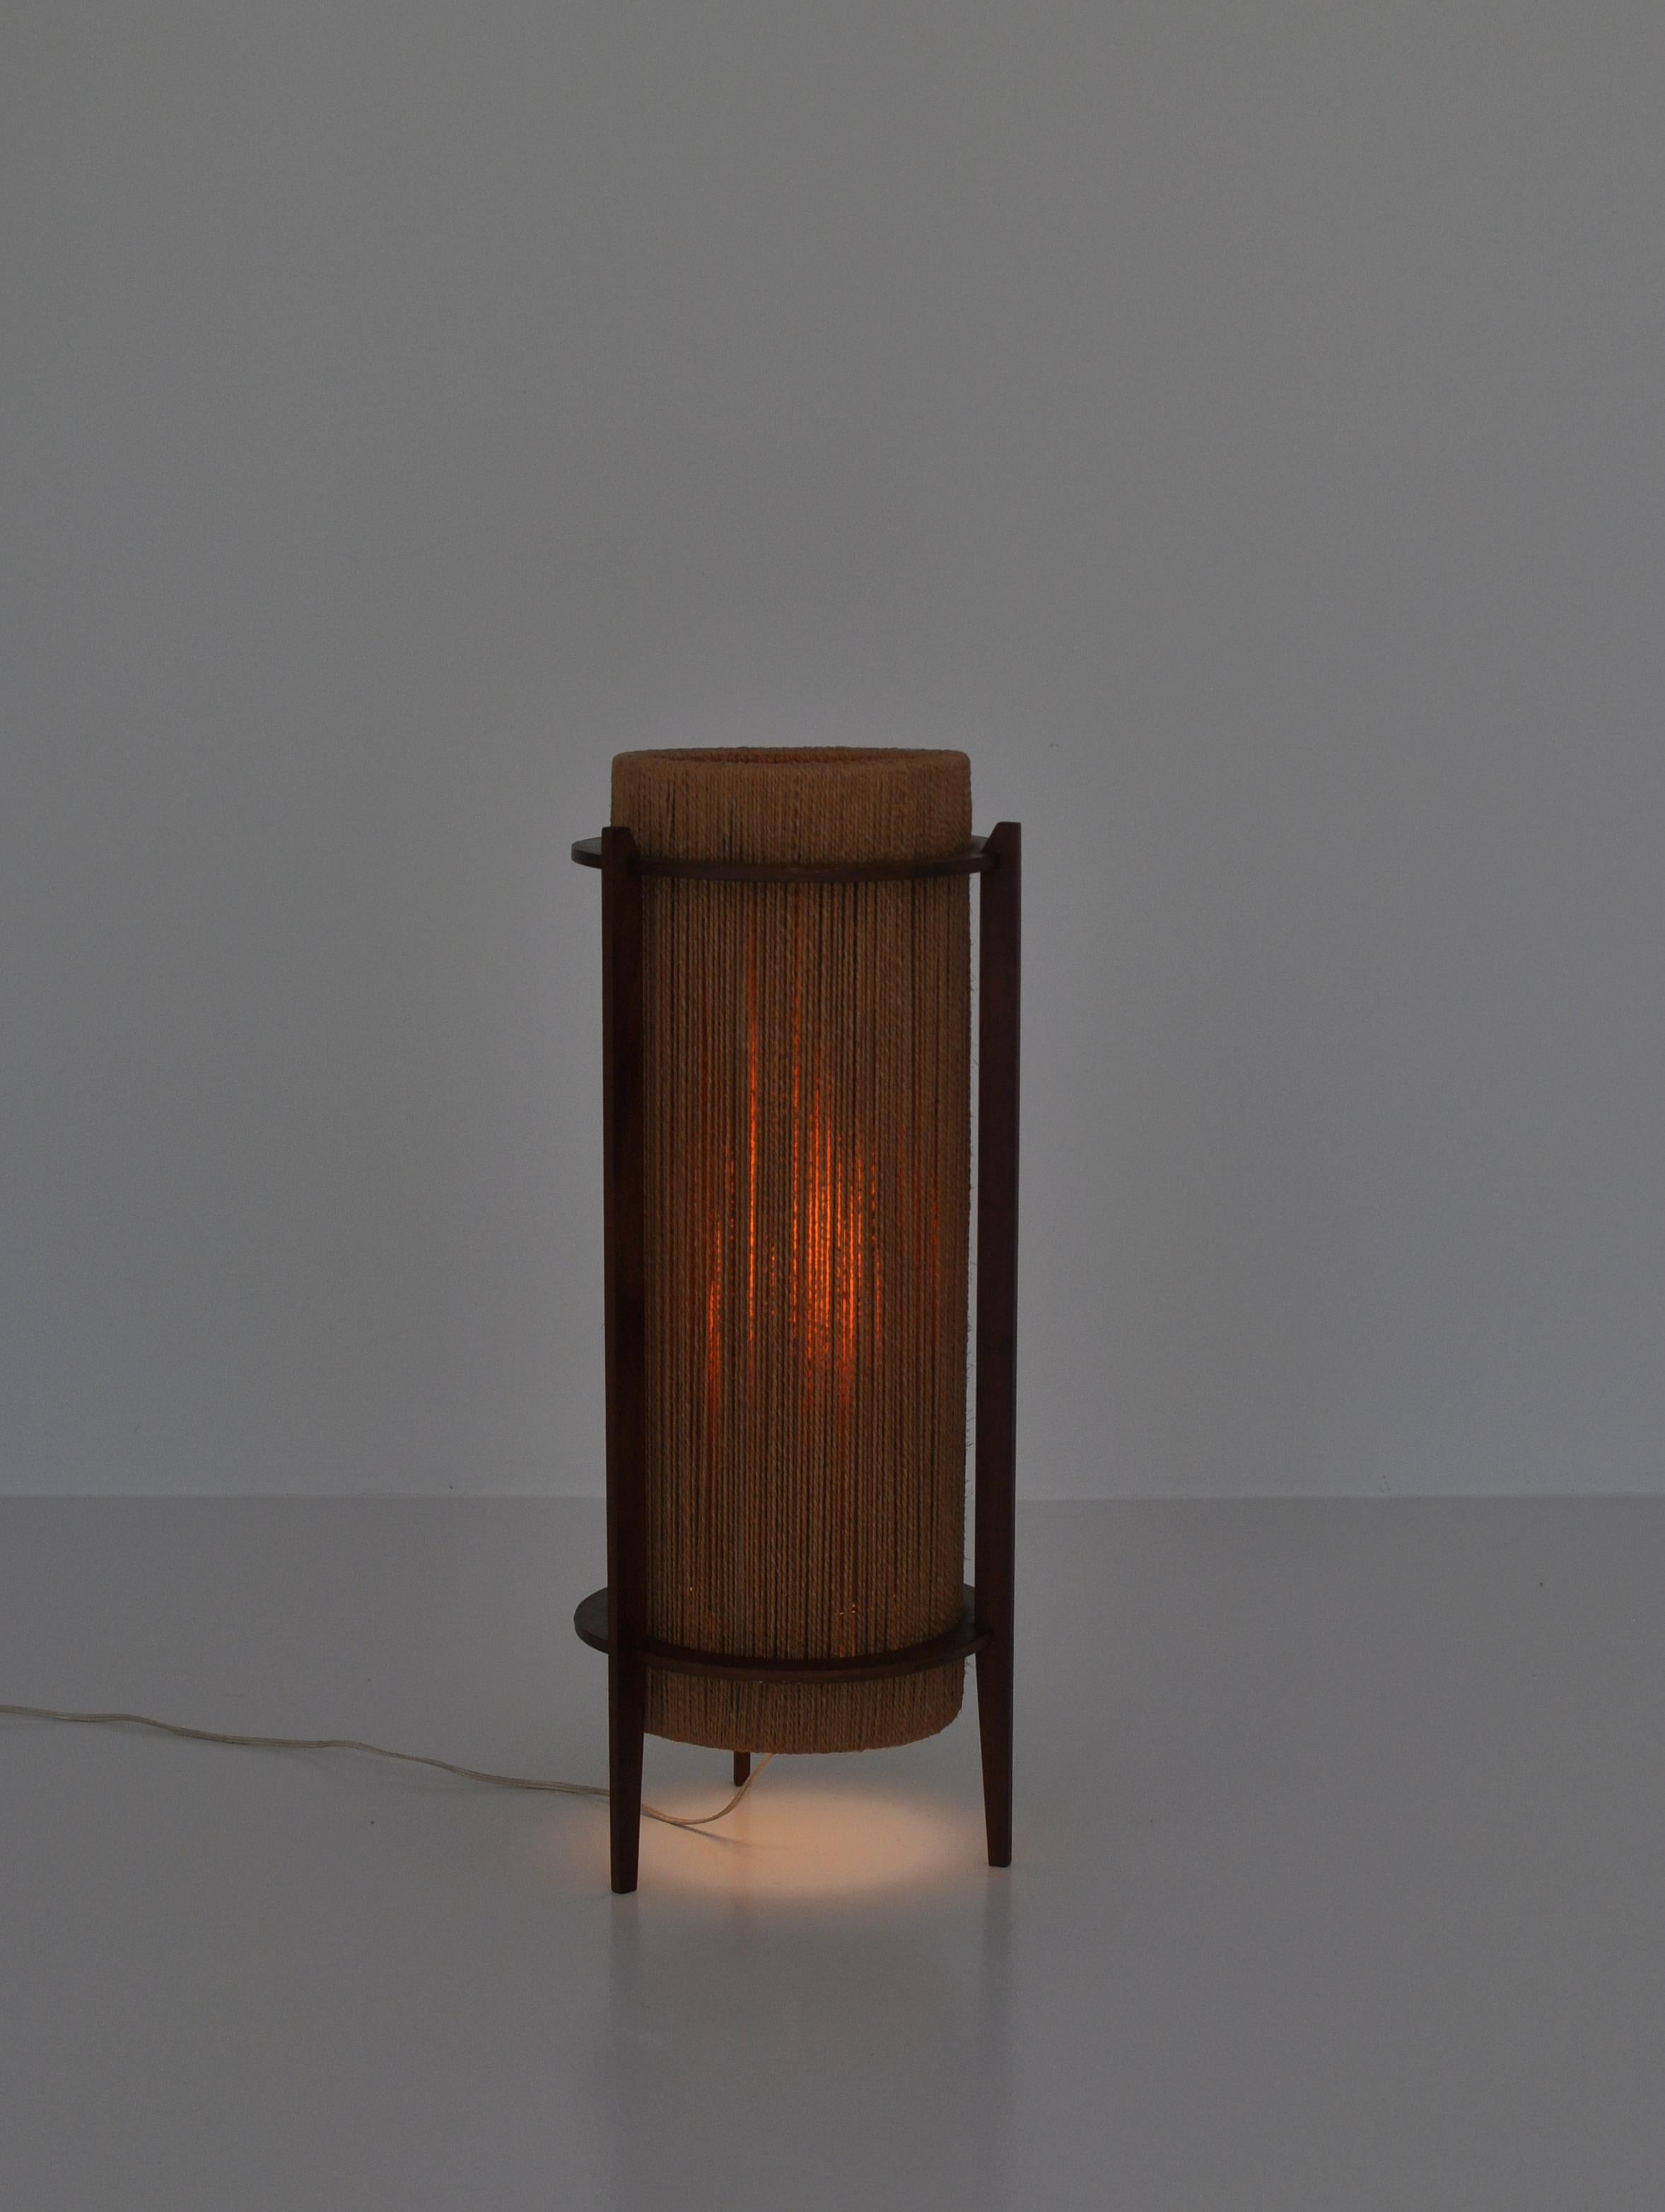 Mid-20th Century Scandinavian Modern Teak Floor Lamp by Ib Fabiansen for Fog & Mørup, 1960s